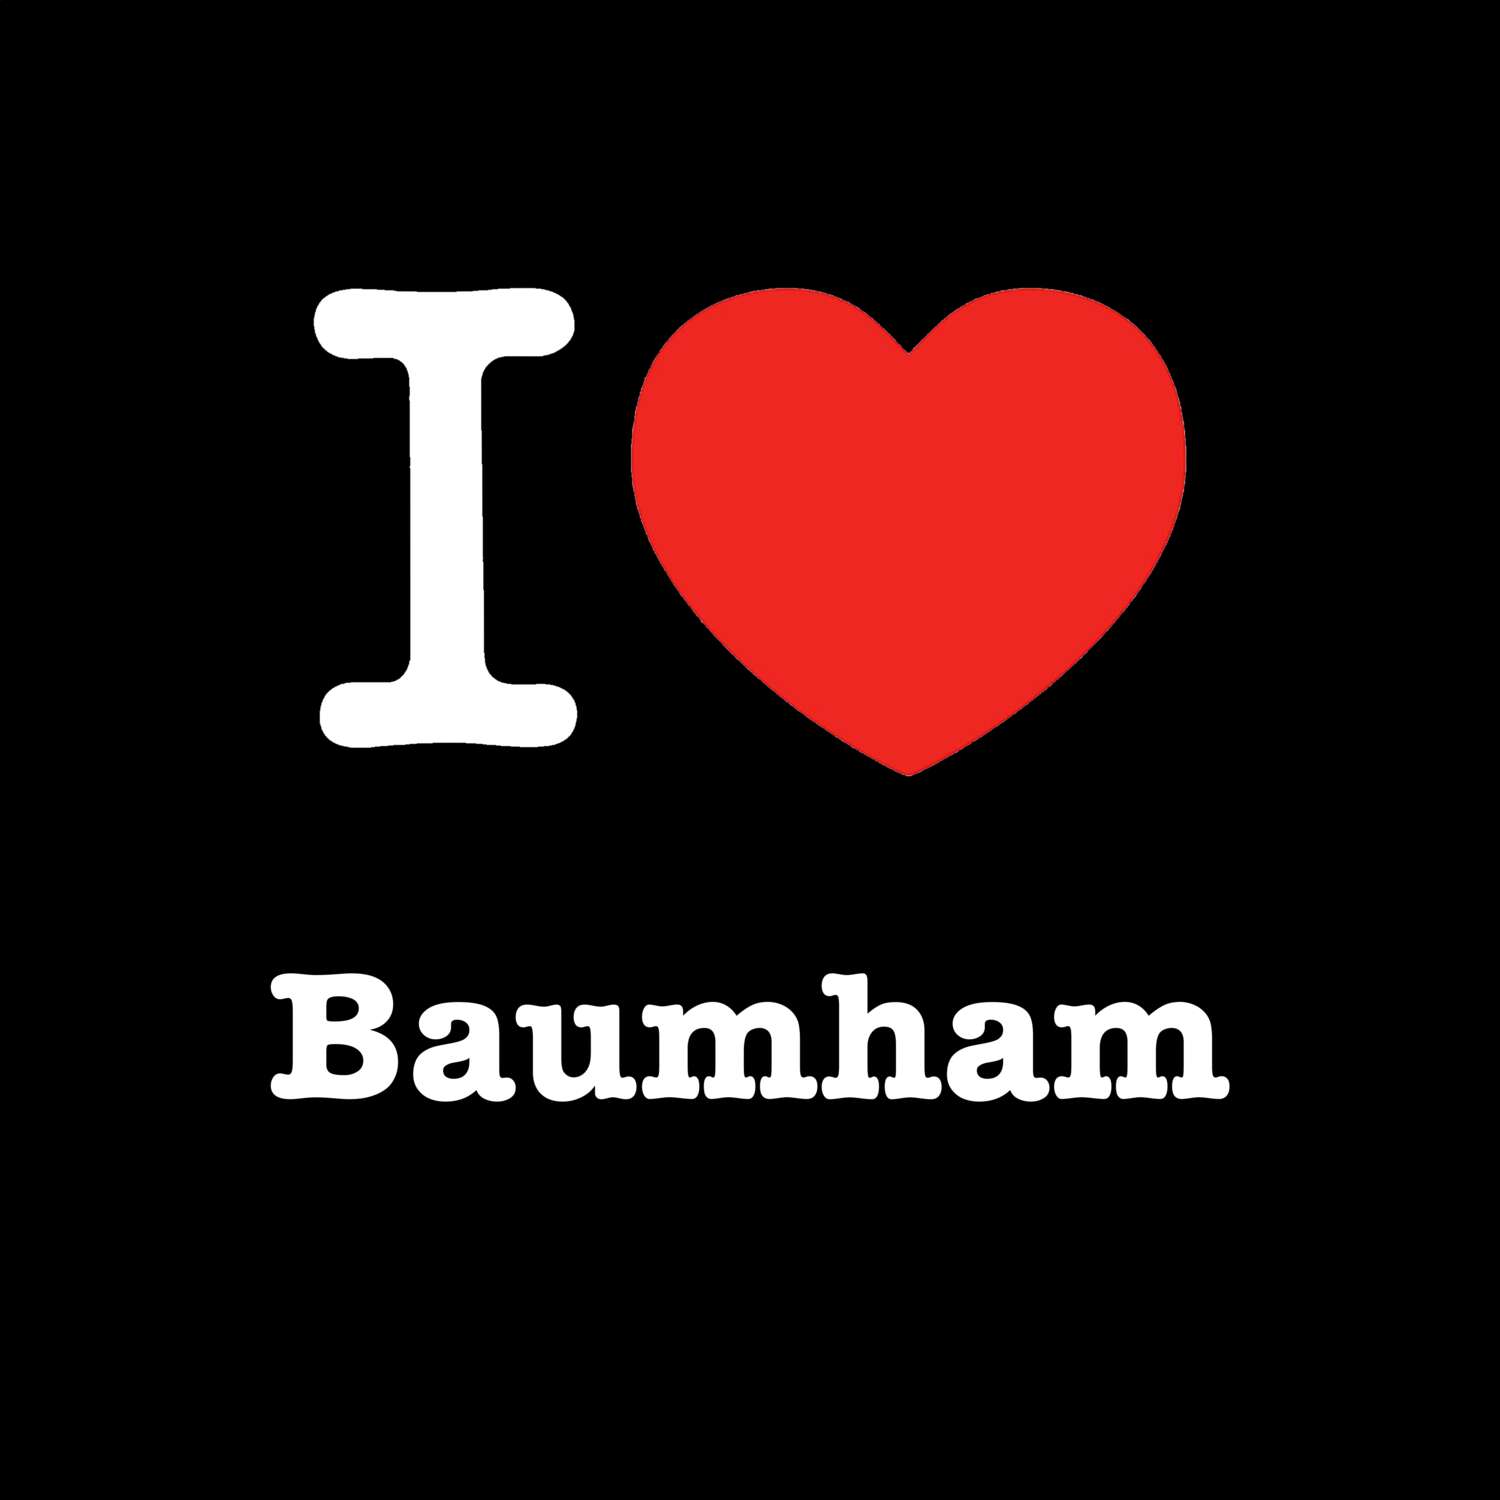 Baumham T-Shirt »I love«